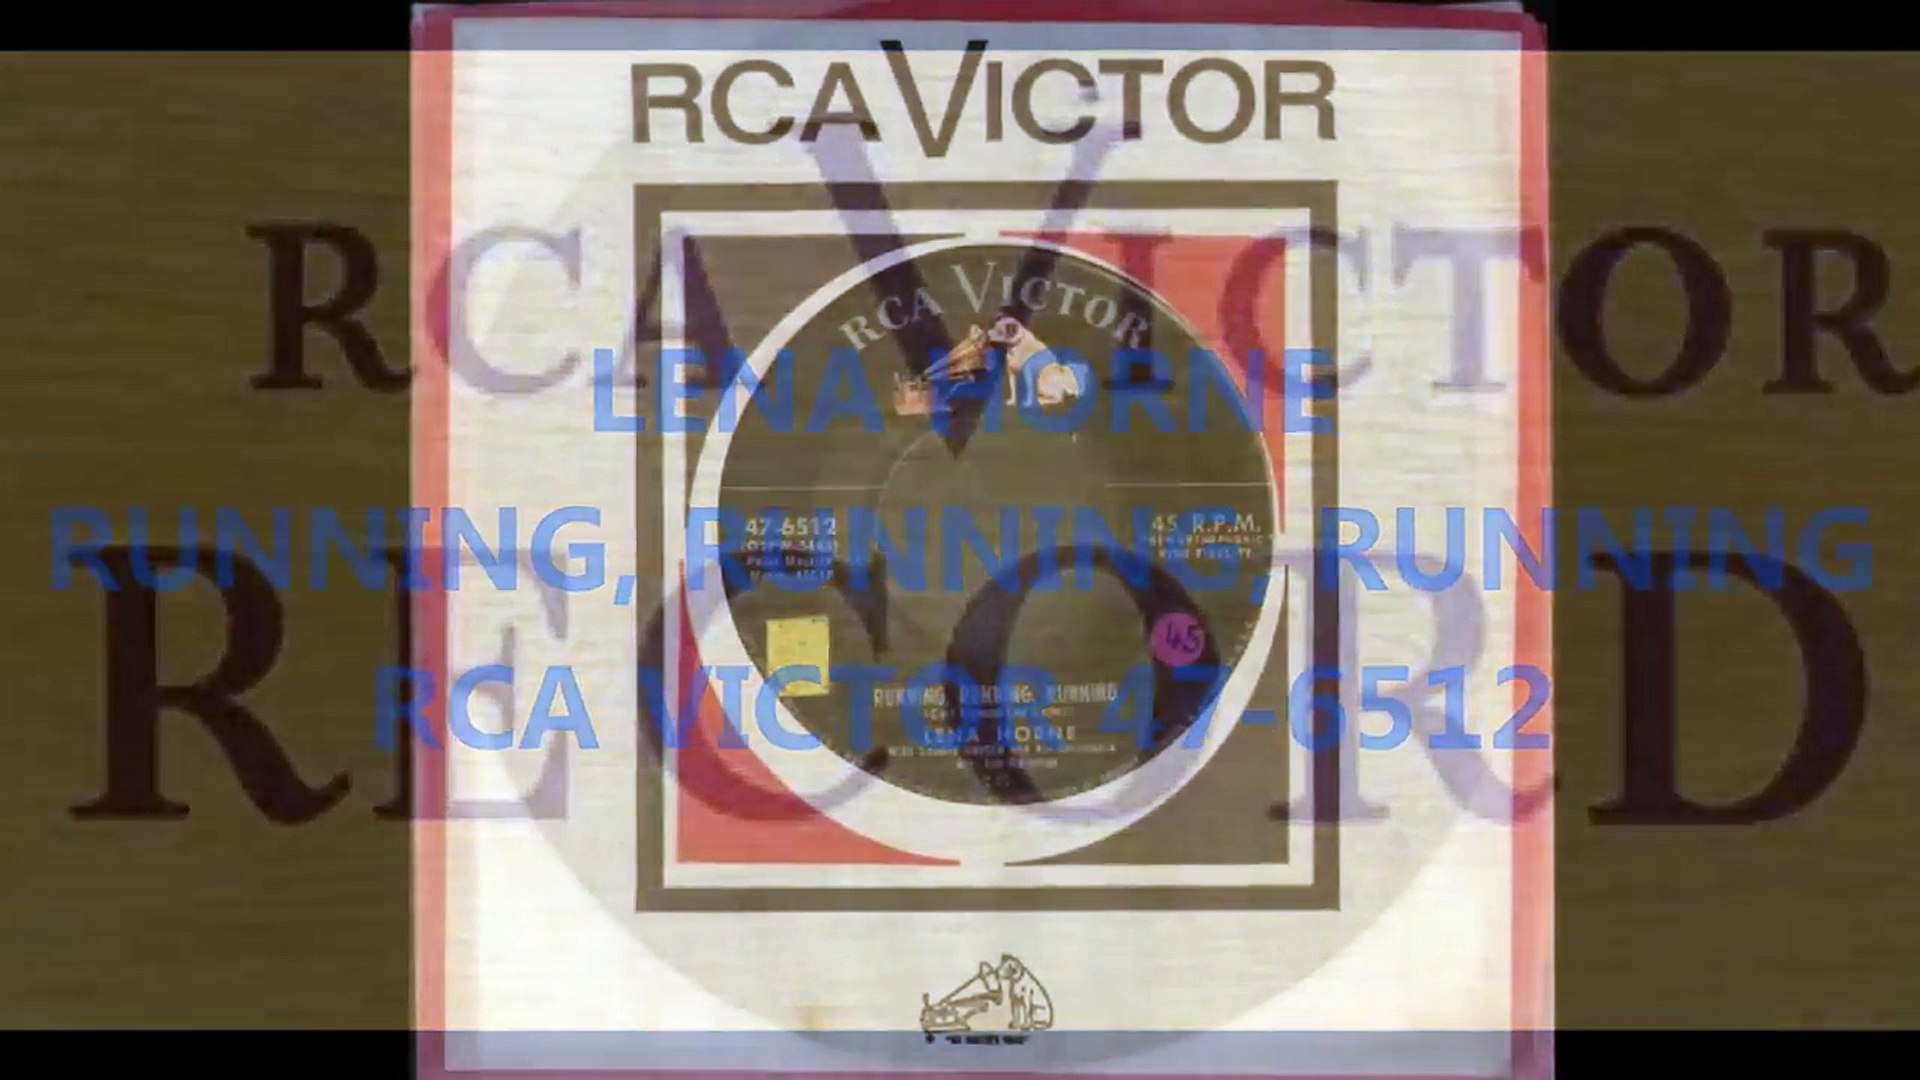 LENA HORNE - RUNNING, RUNNING, RUNNING - RCA VICTOR 47 6512